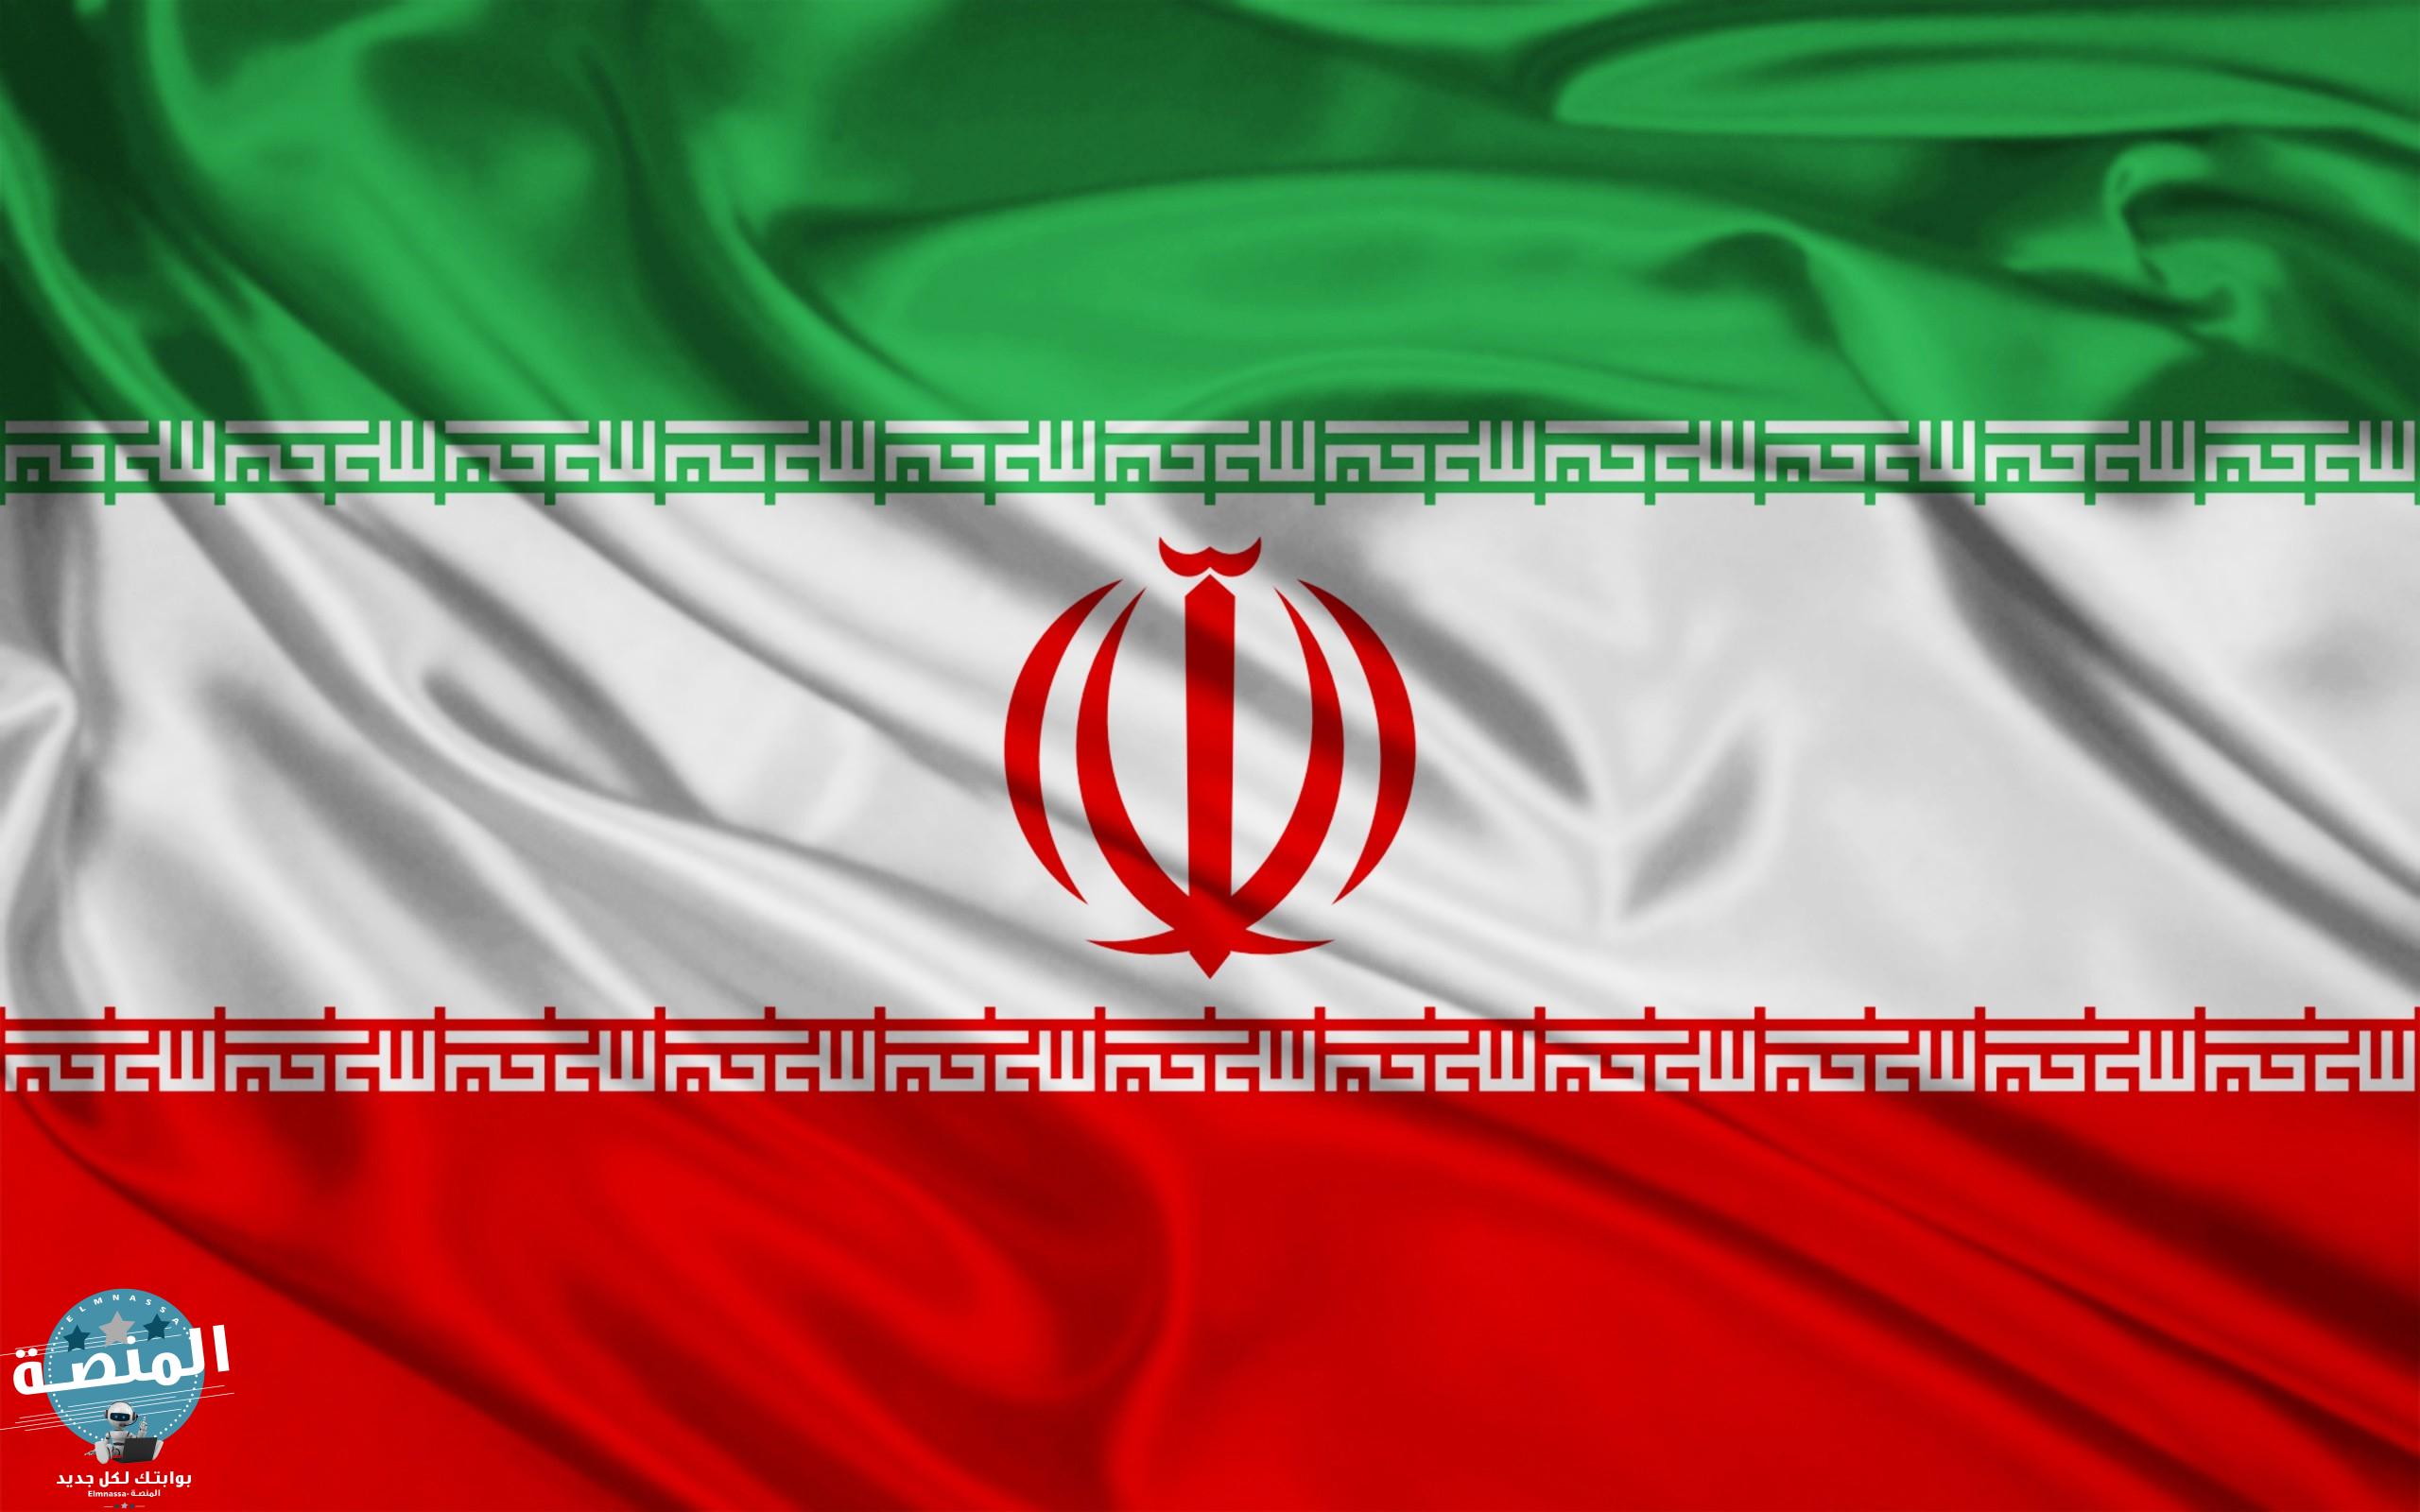 تاريخ إيران و معلومات عن الدولة الإيرانية